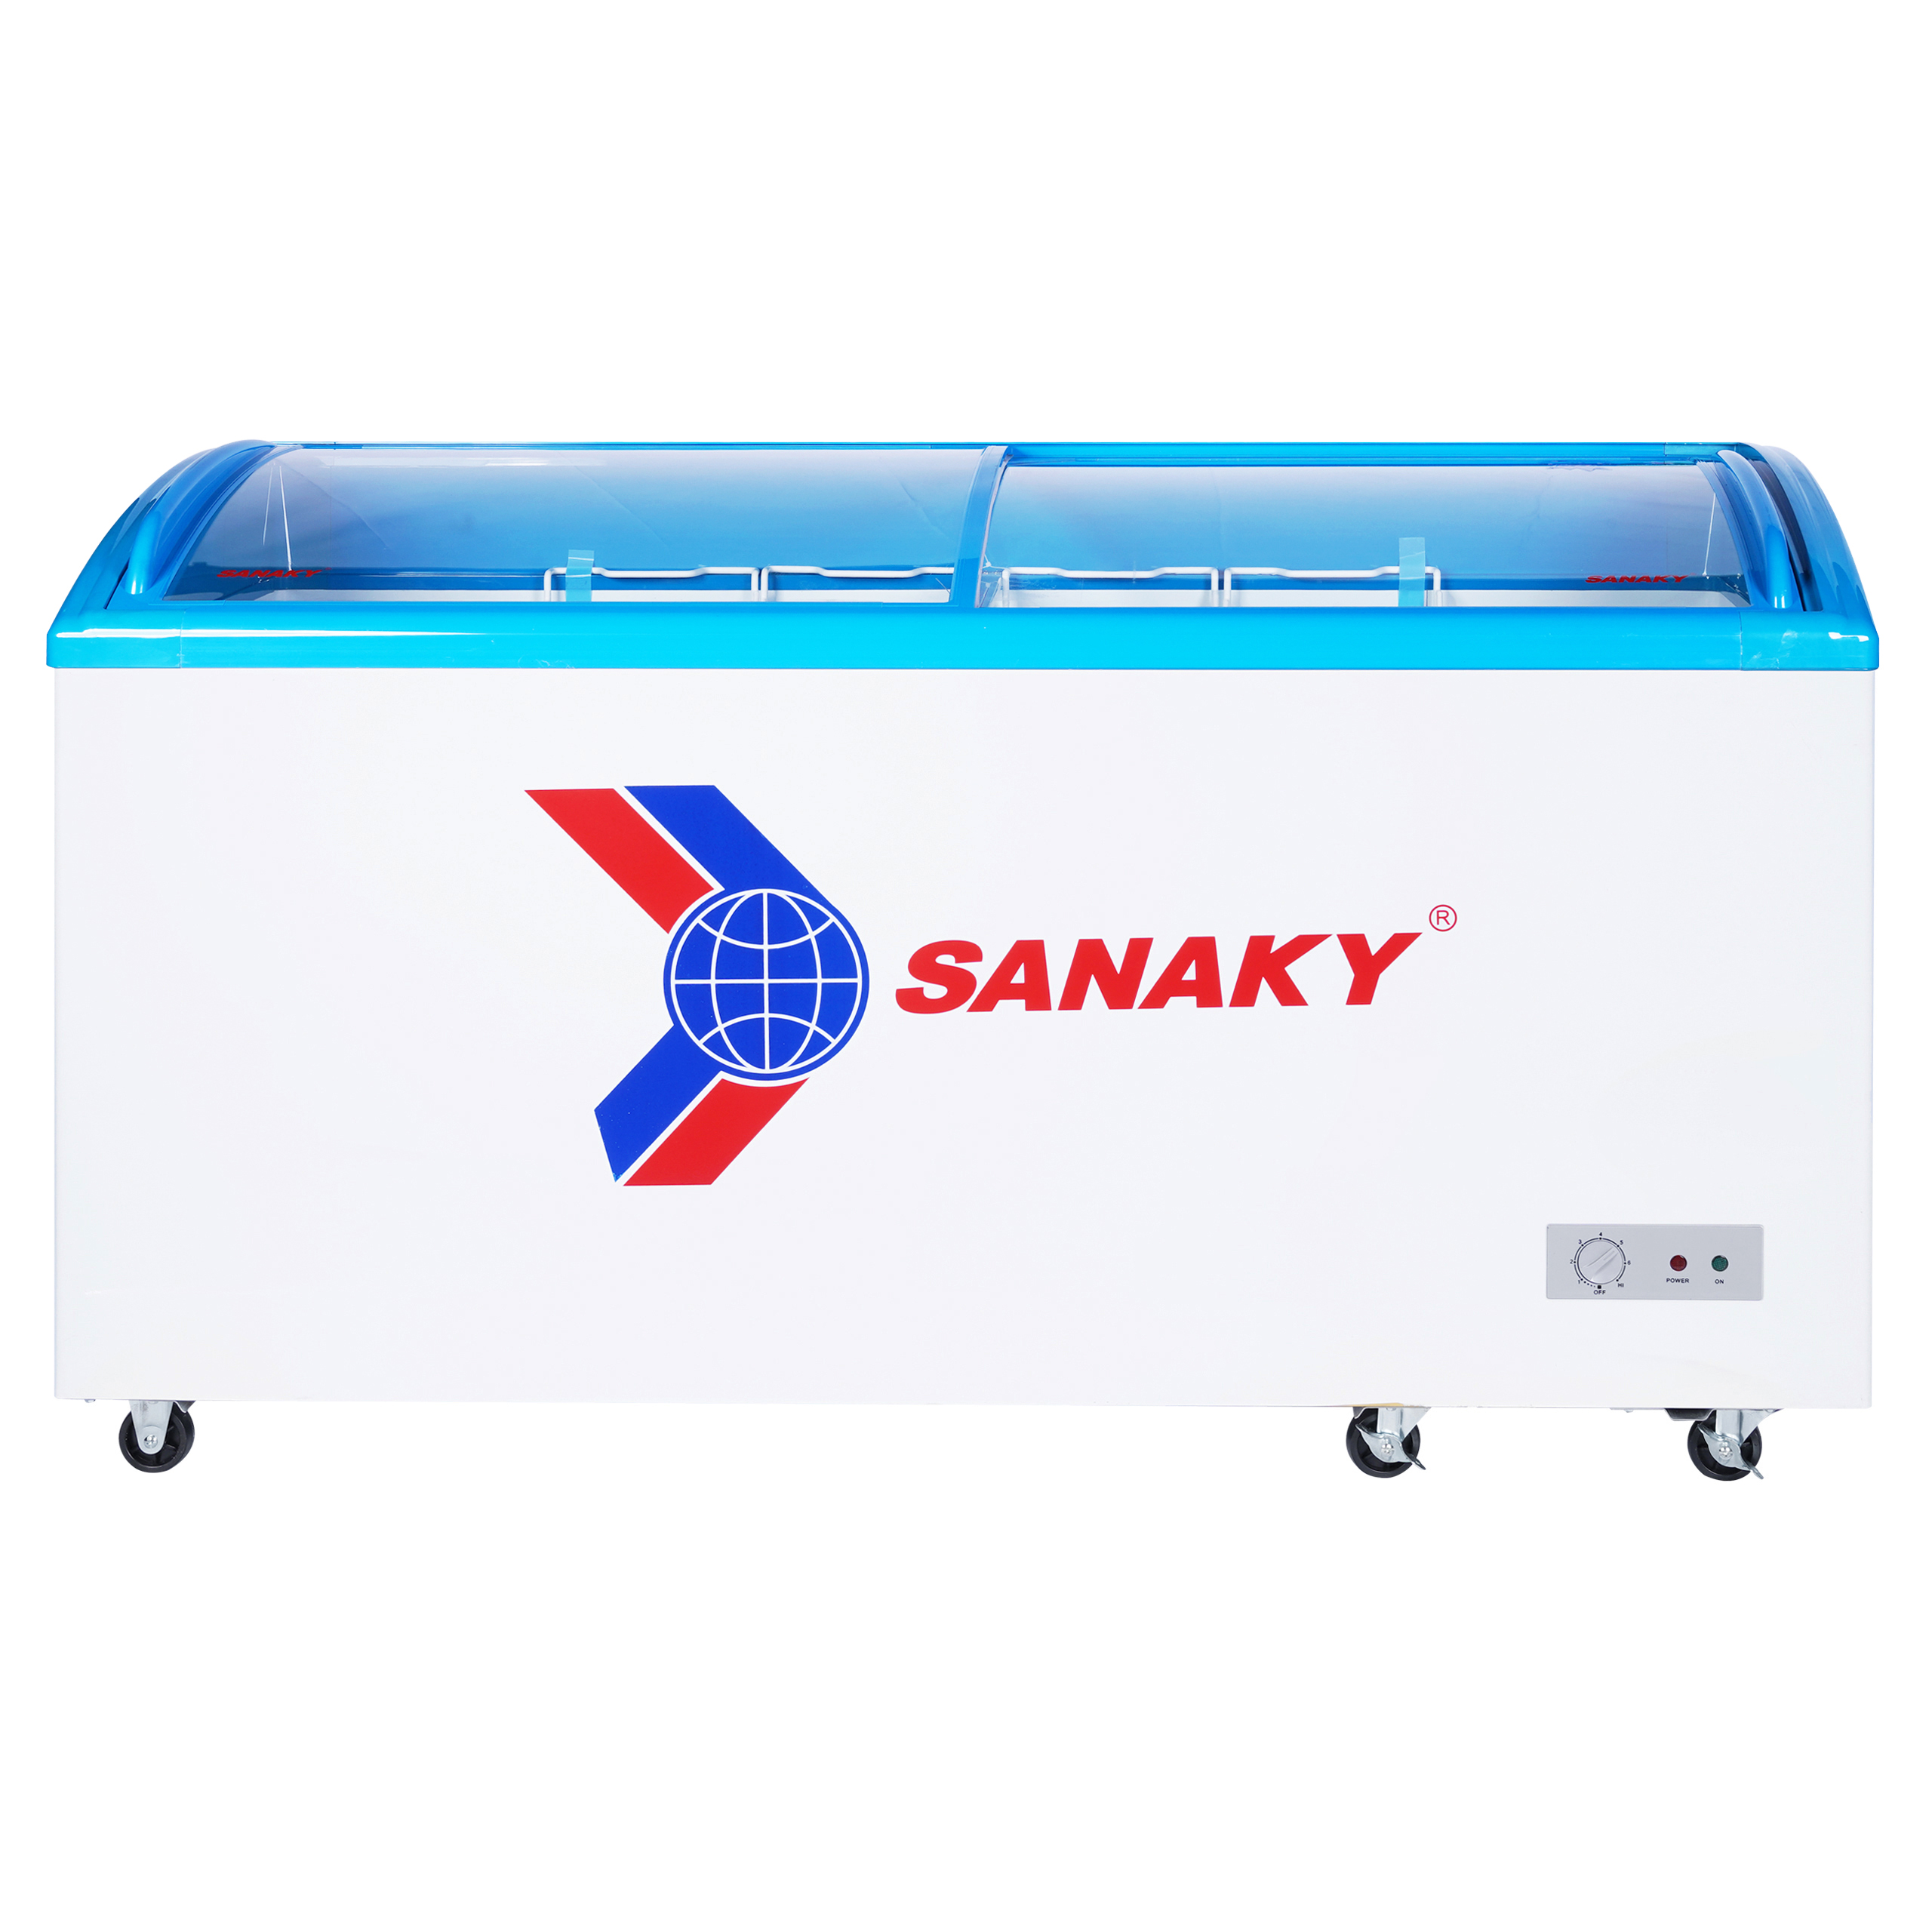 Tủ Đông Sanaky VH-682K